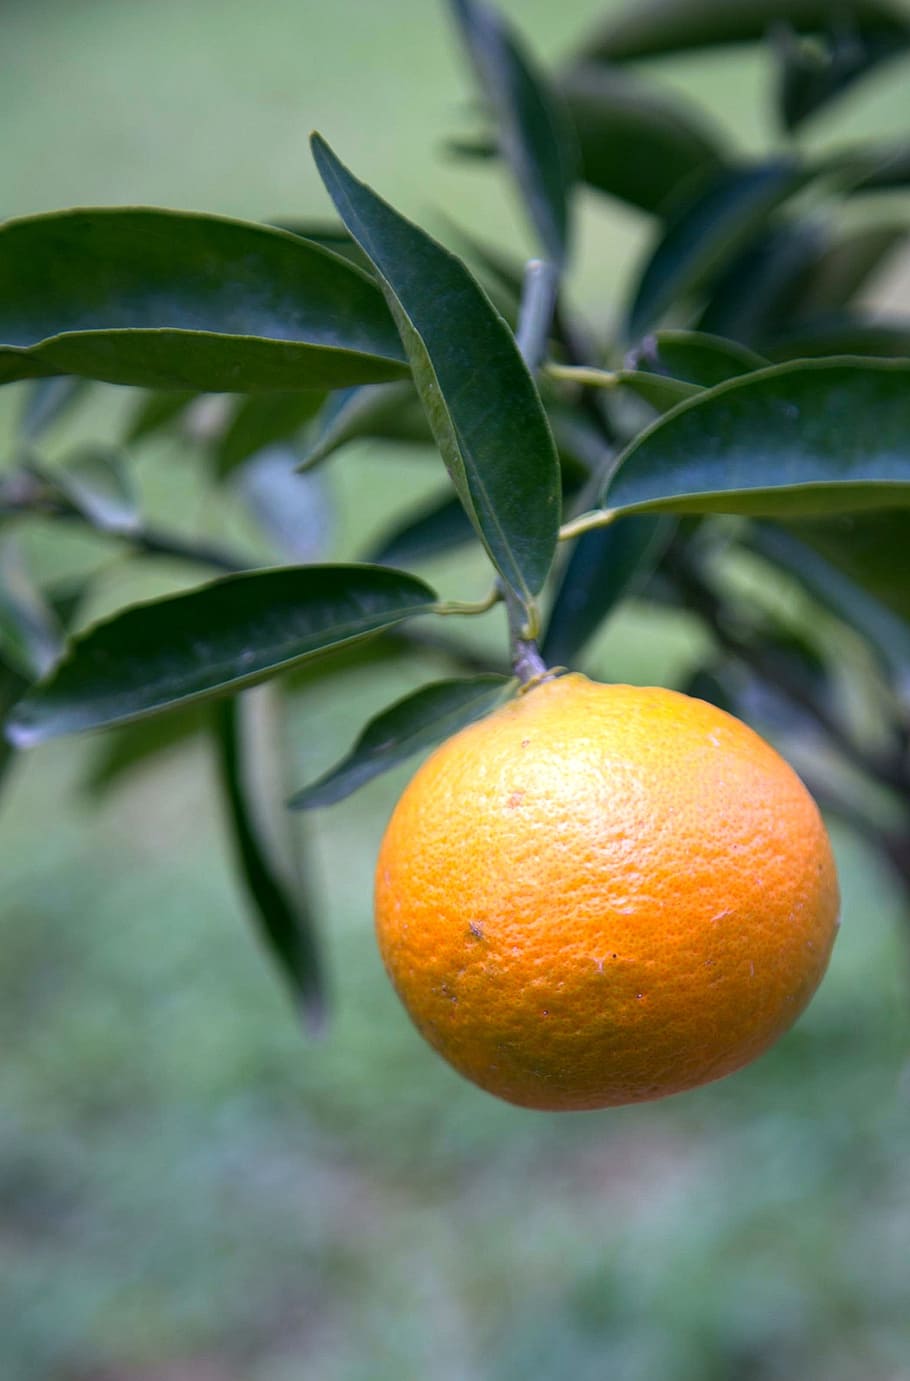 tangerine, fruit, garden, food, leaf, healthy eating, food and drink, citrus fruit, plant part, orange color